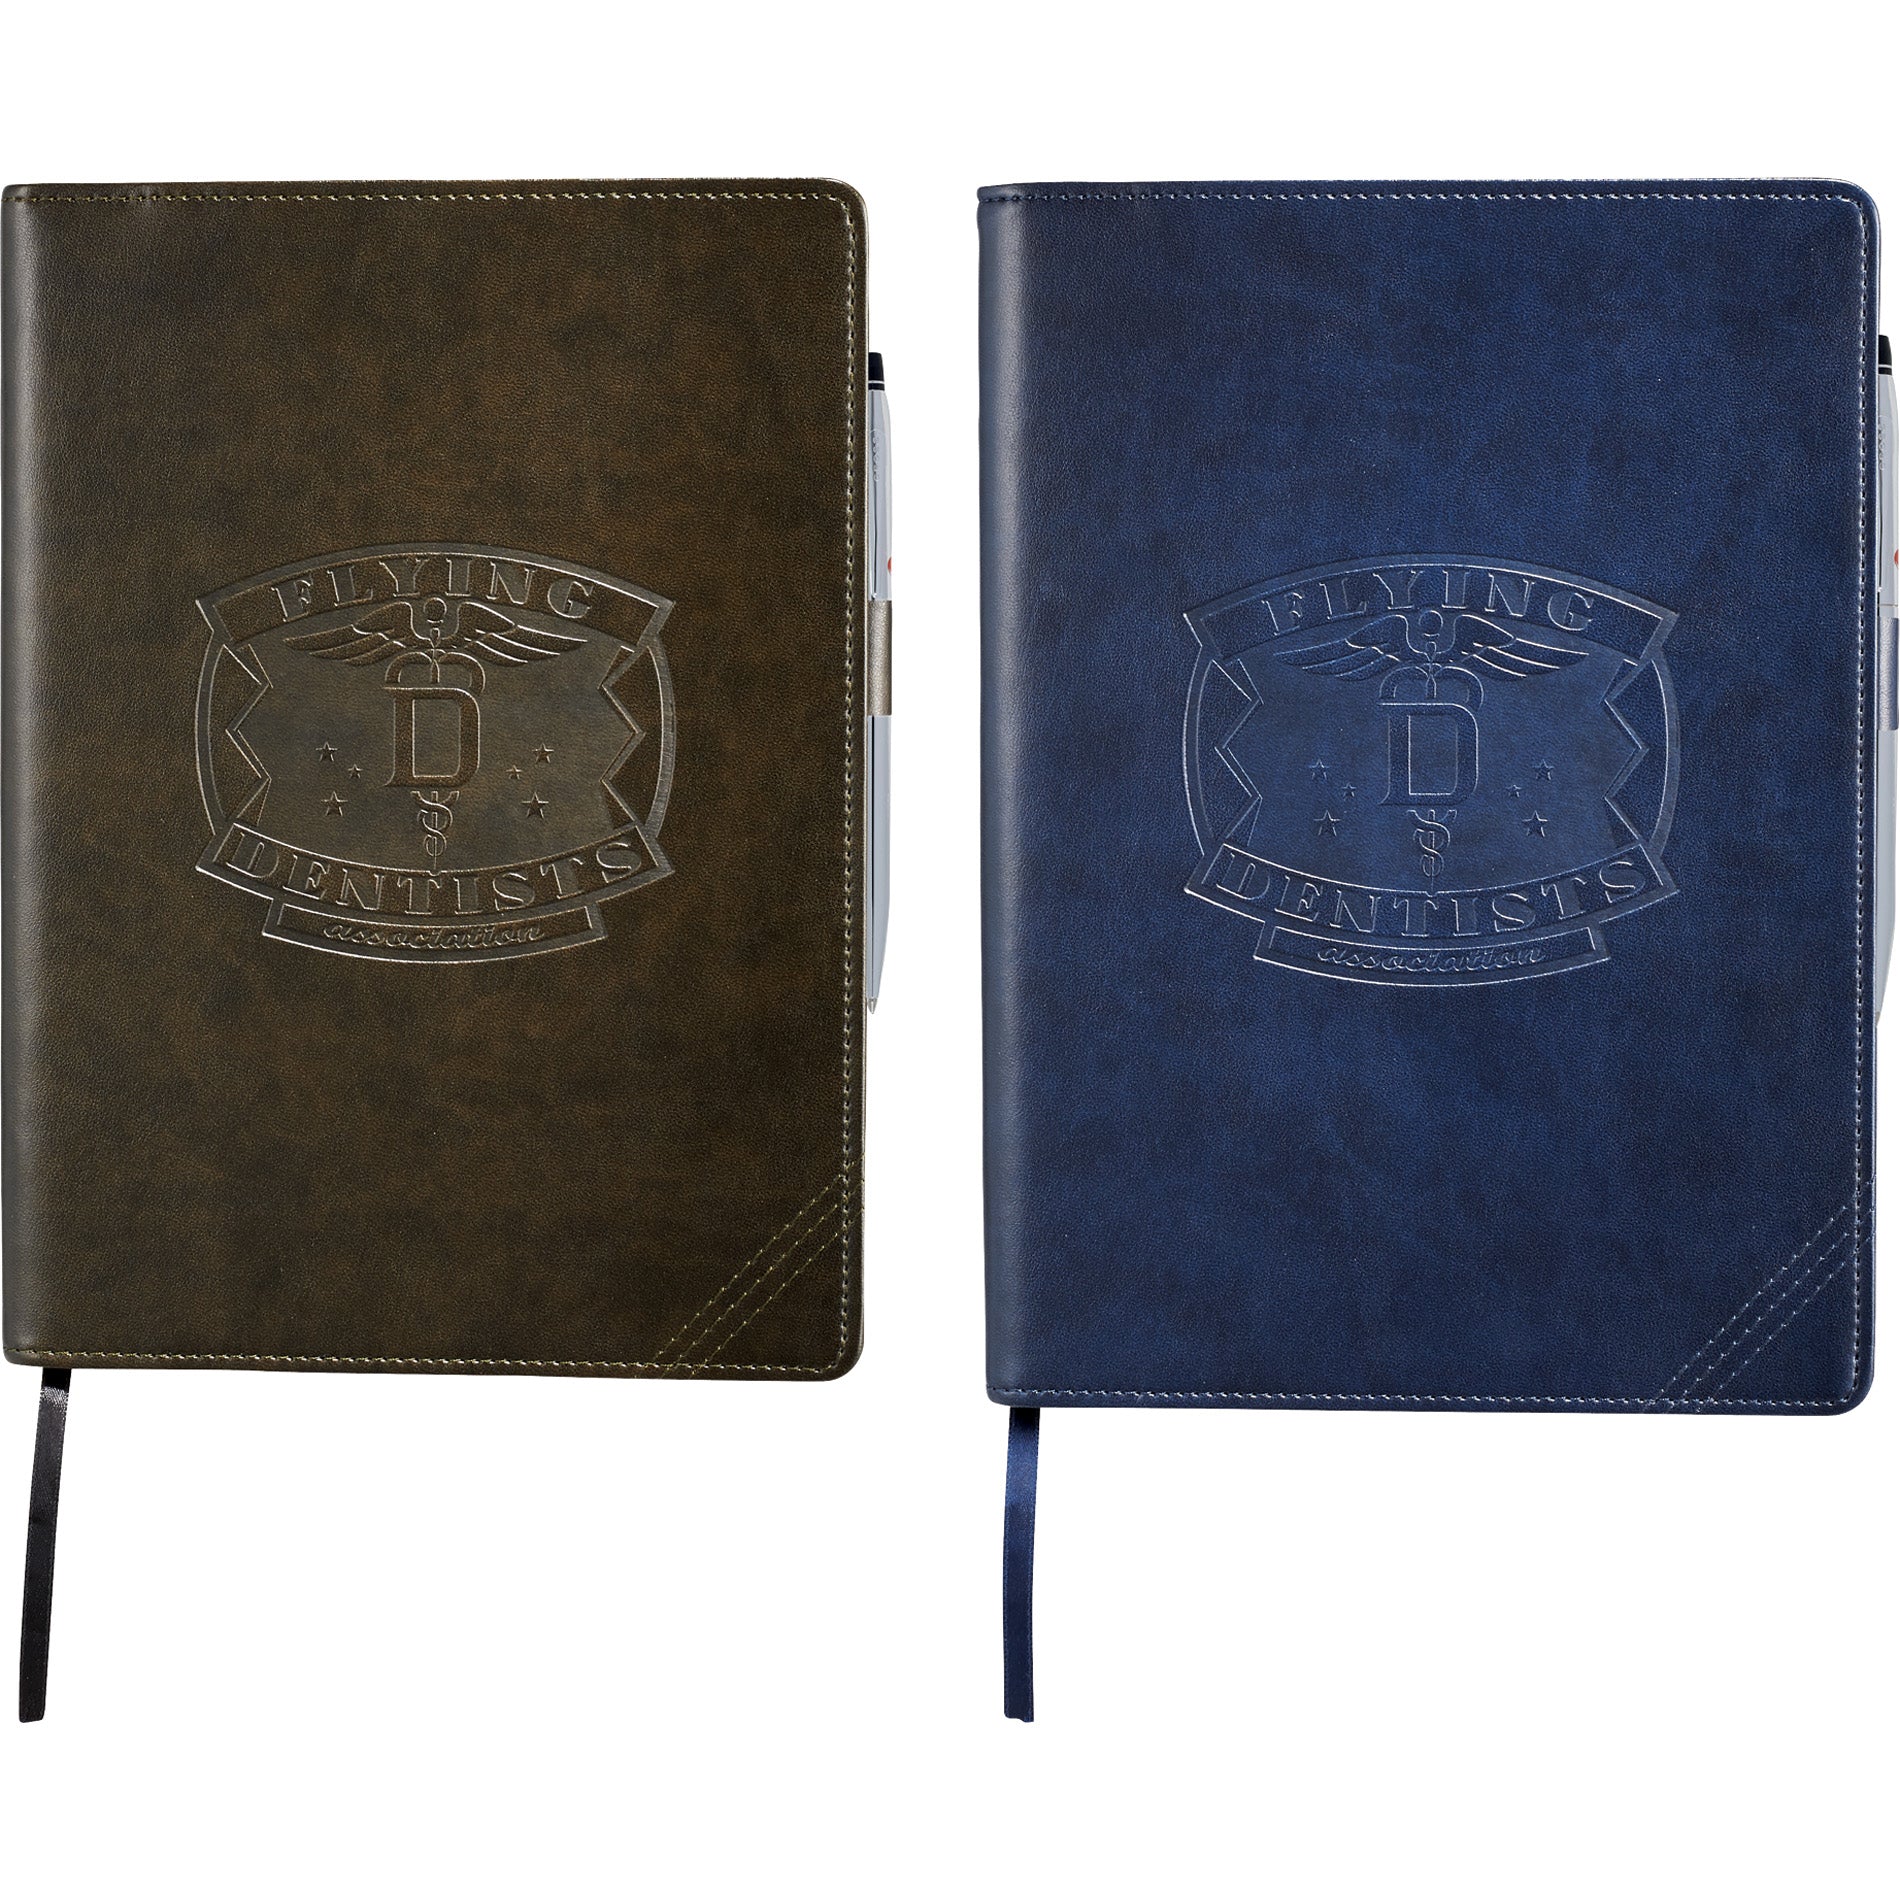 branded refillable Cross journal